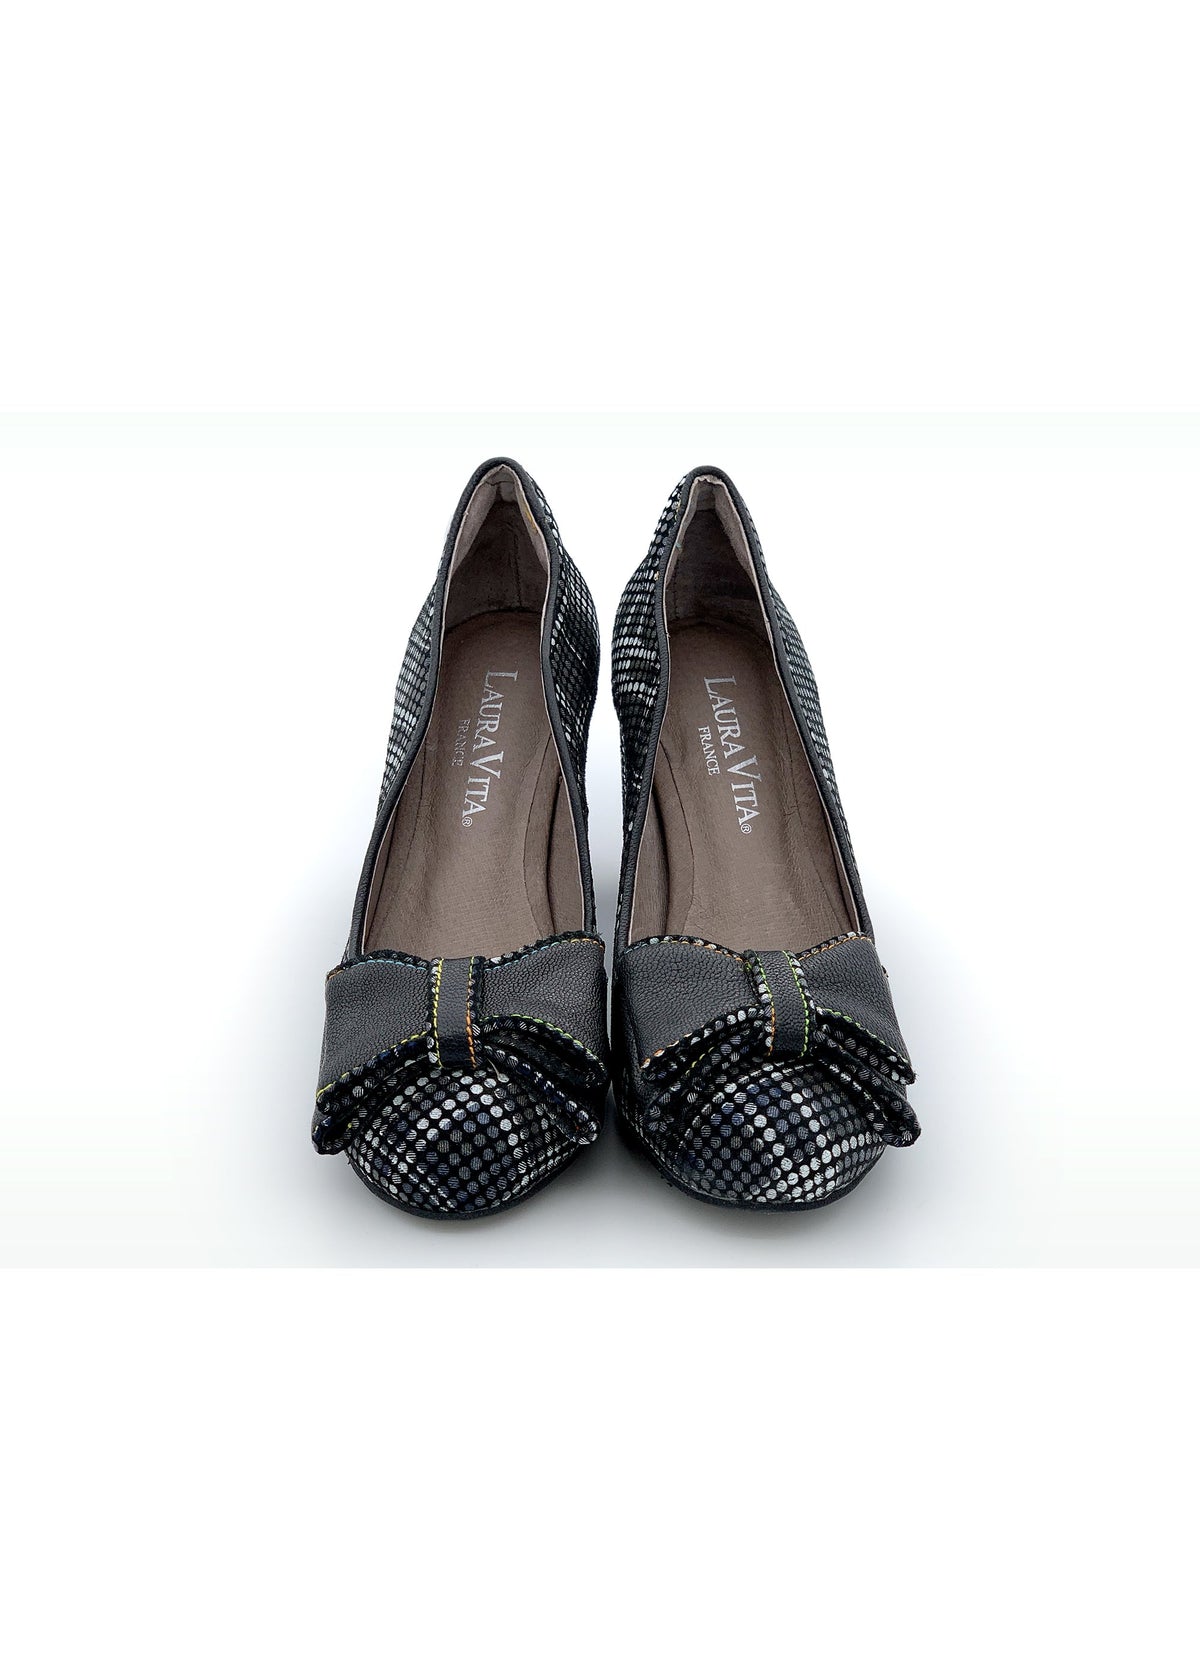 High heels with stiletto heel - dark pattern